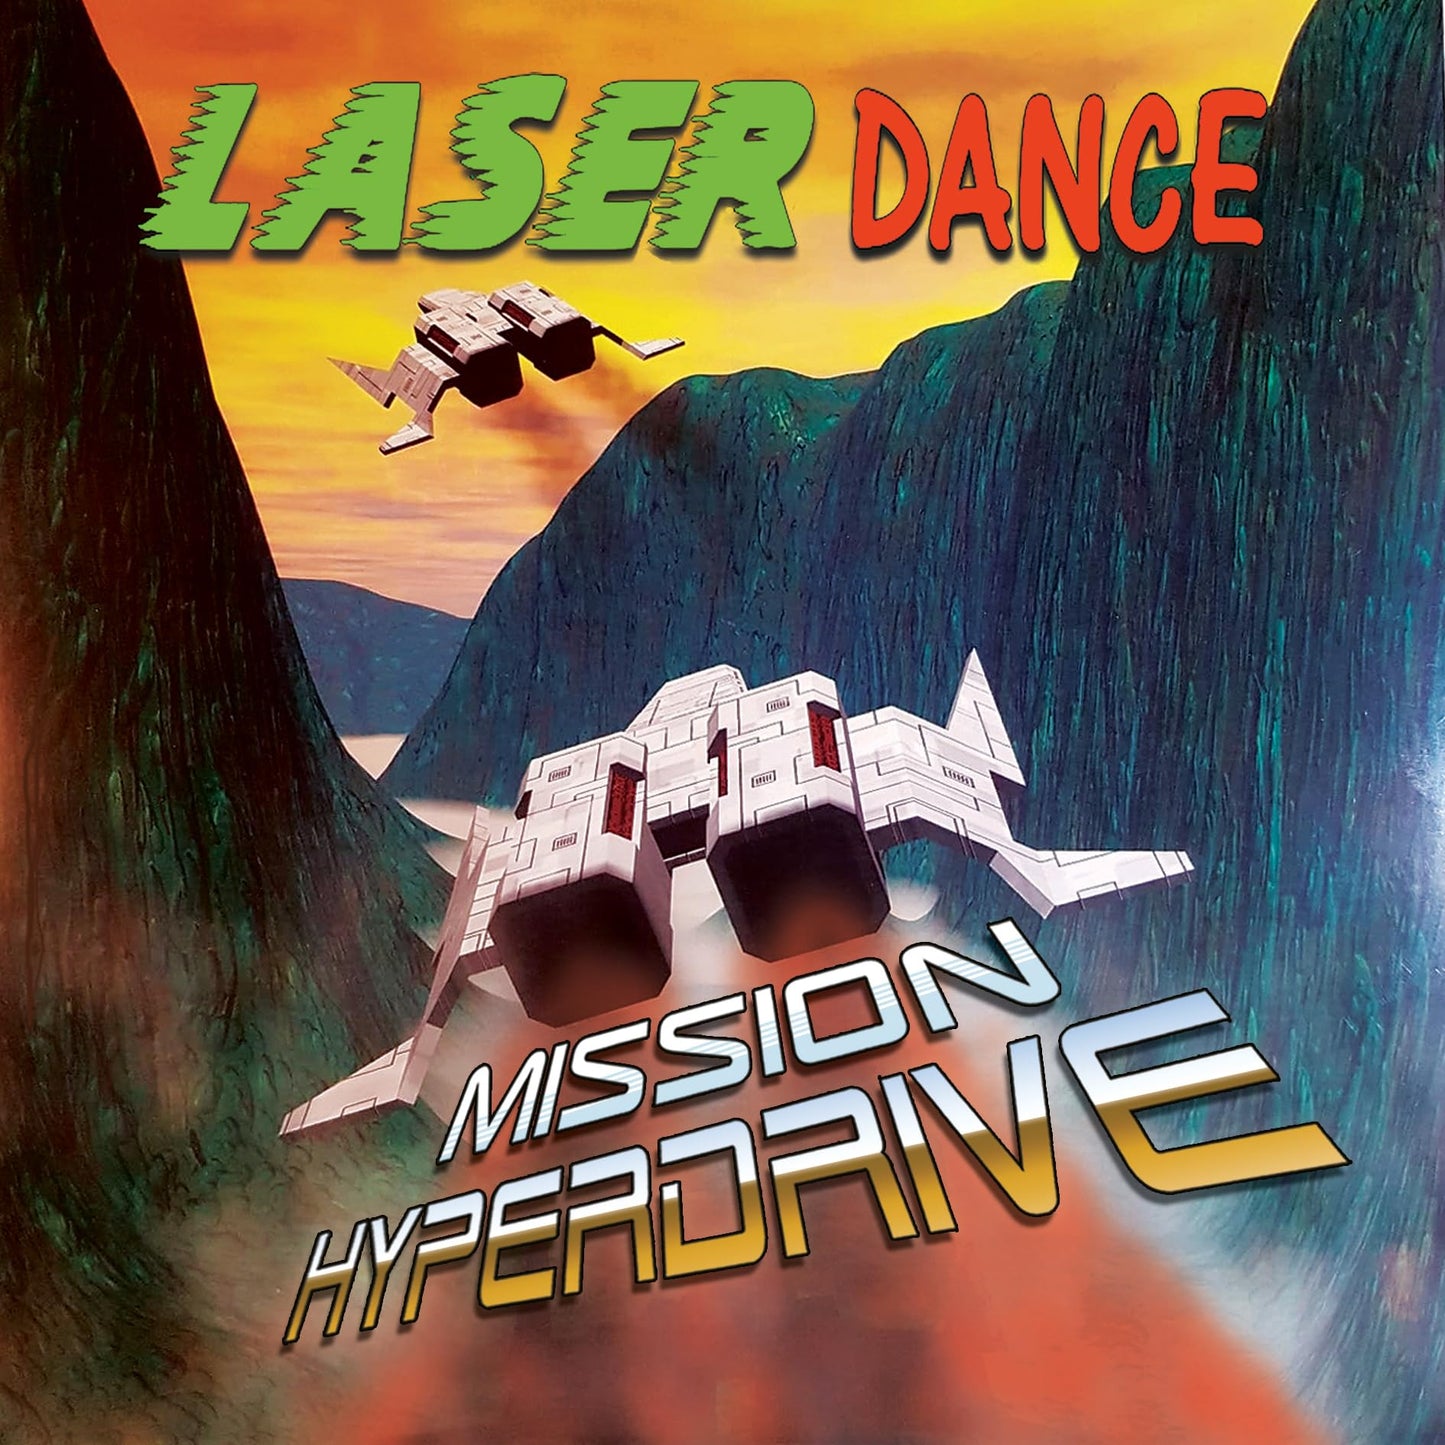 Laser Dance - Mission Hyperdrive - Import CD